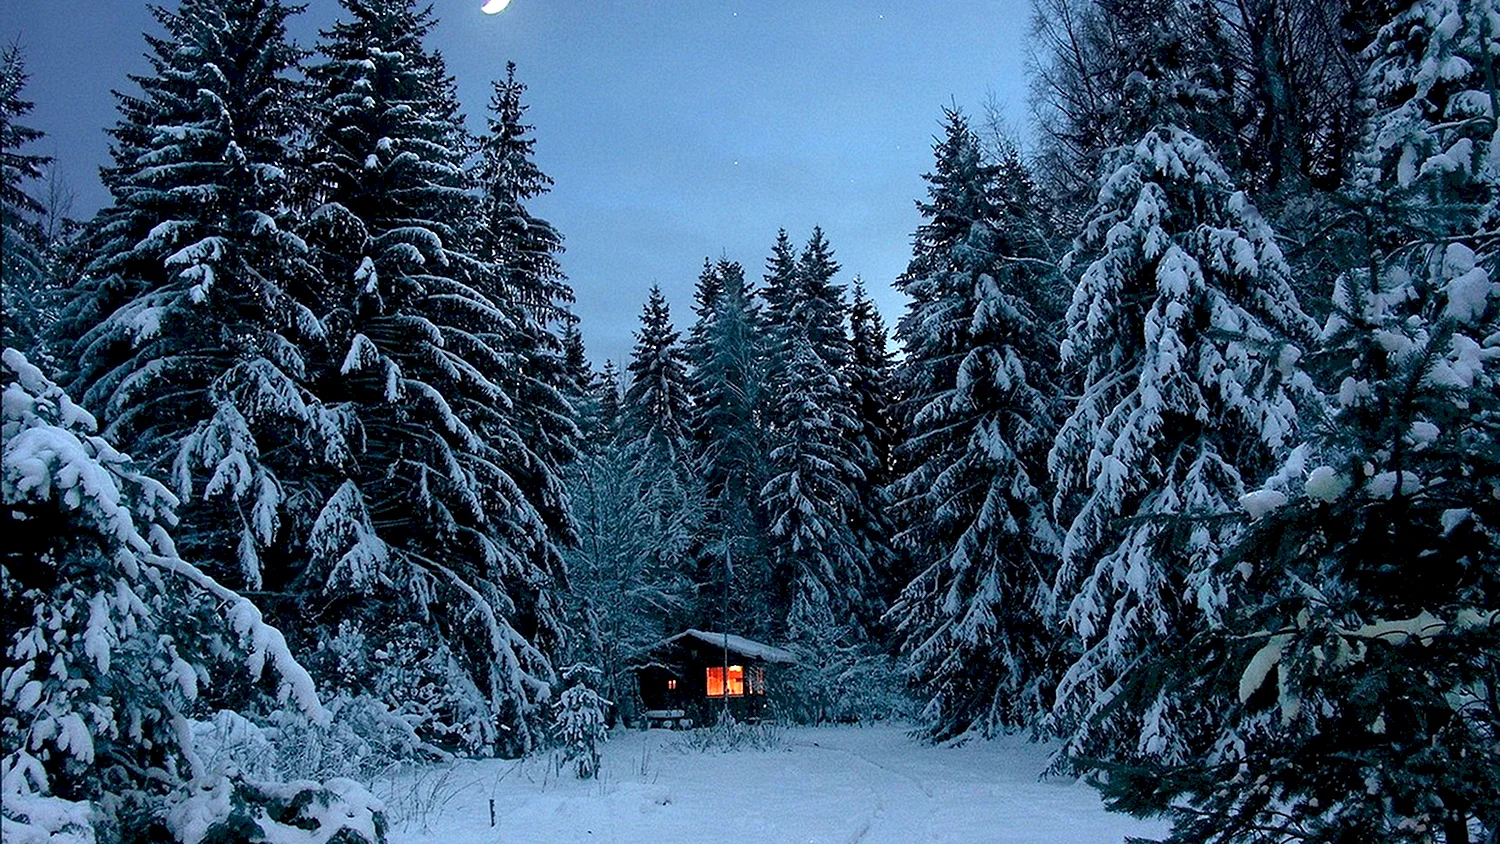 Домик в лесу зимой